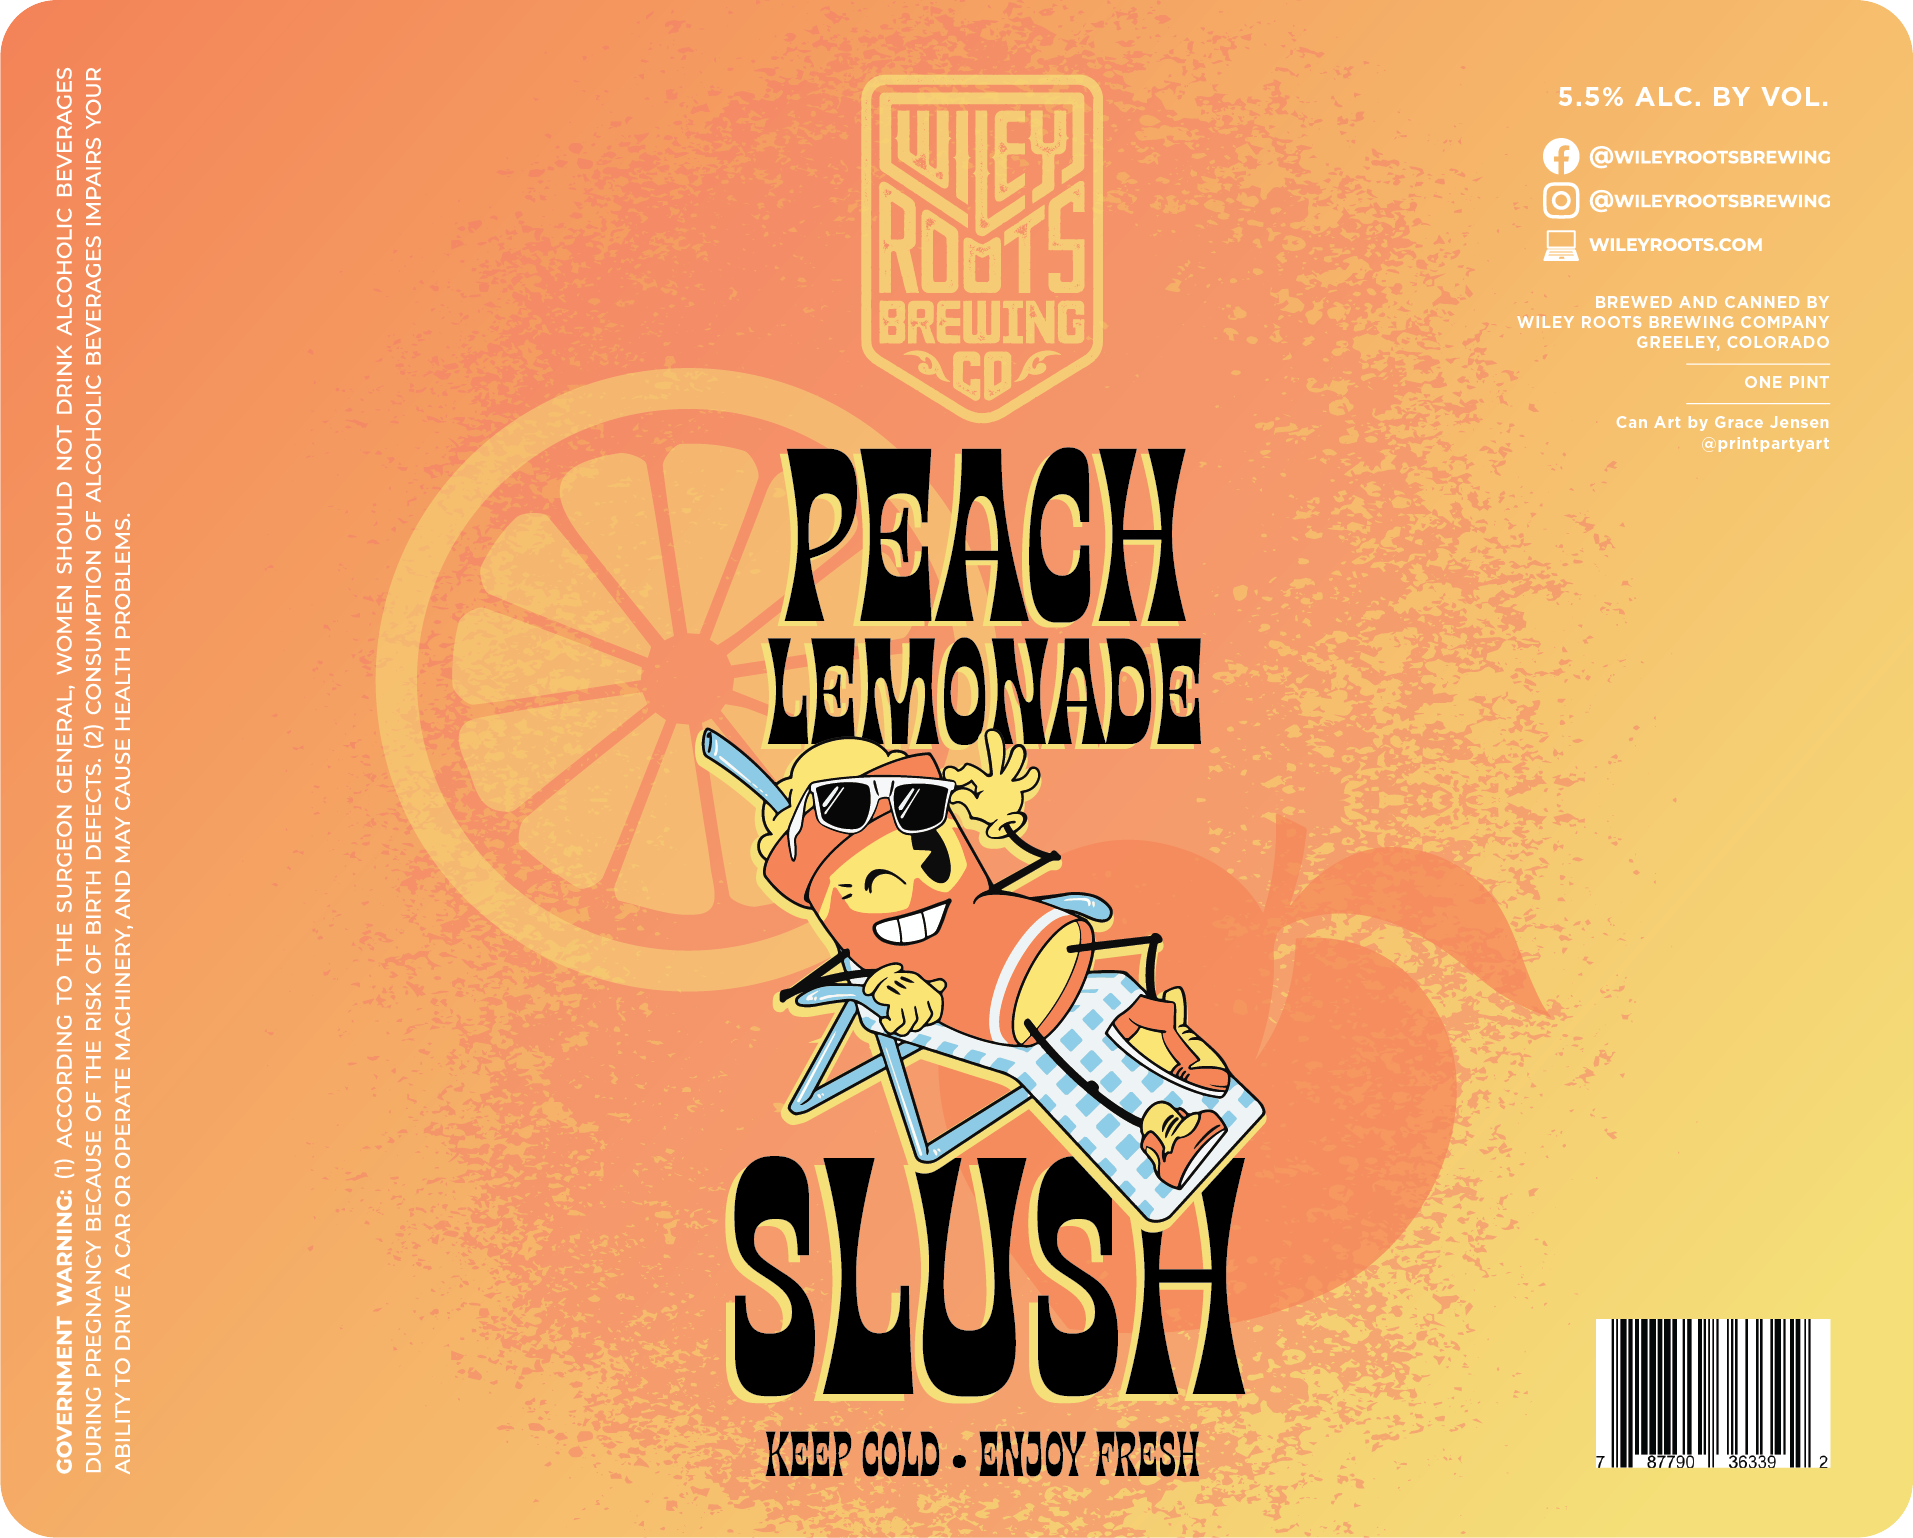 Peach Lemonade Slush